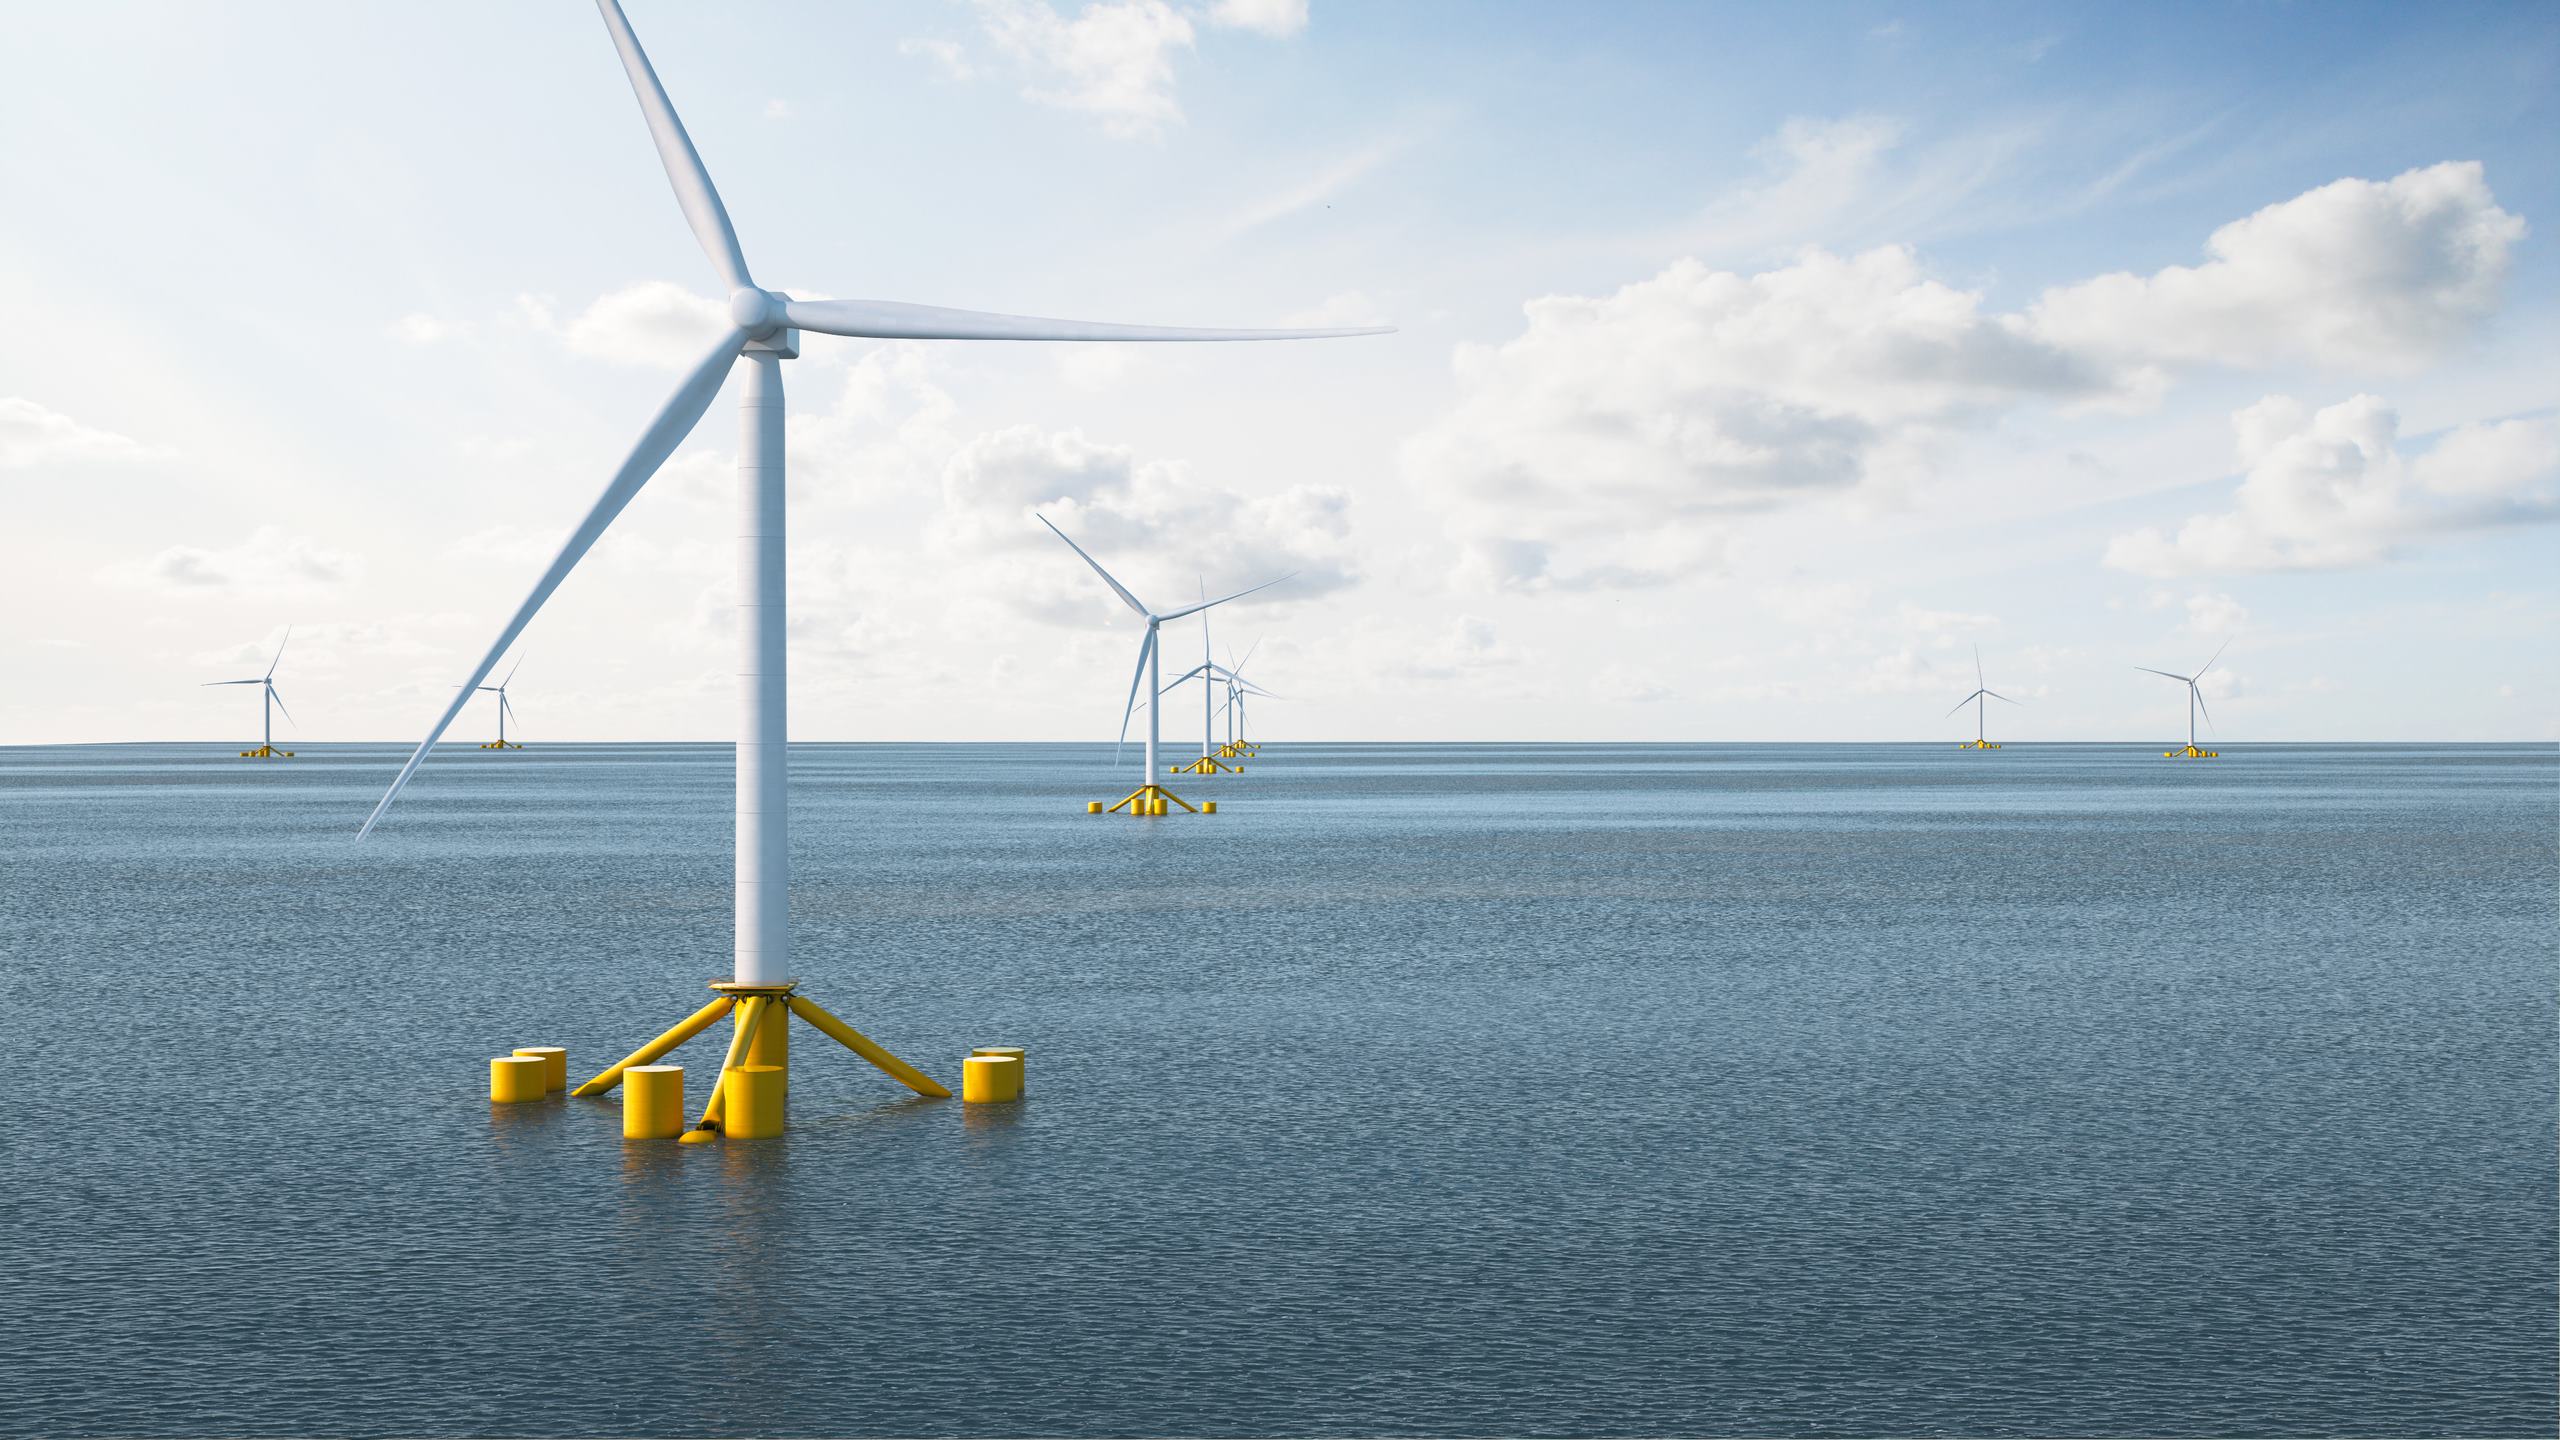 Pentland floating offshore wind farm